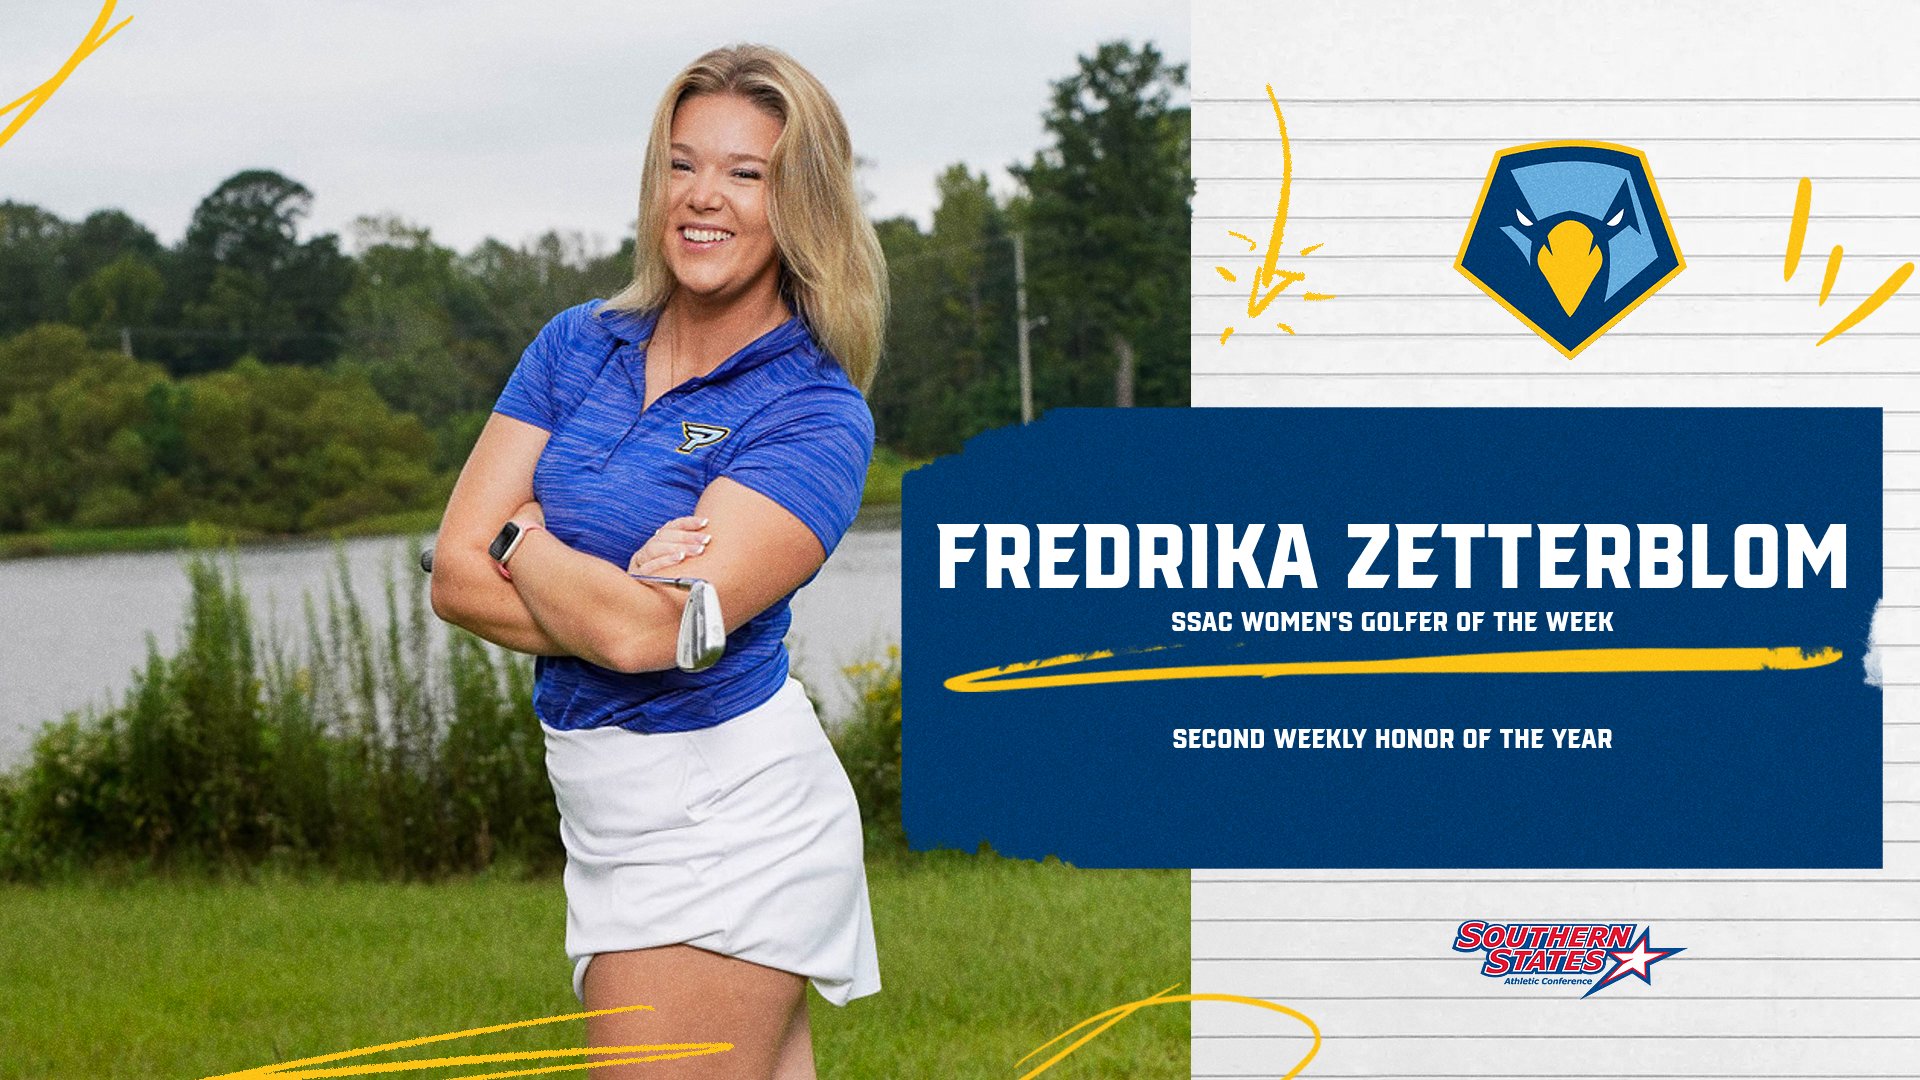 Fredrika Zetterblom earns her second SSAC Women’s Golfer of the Week award